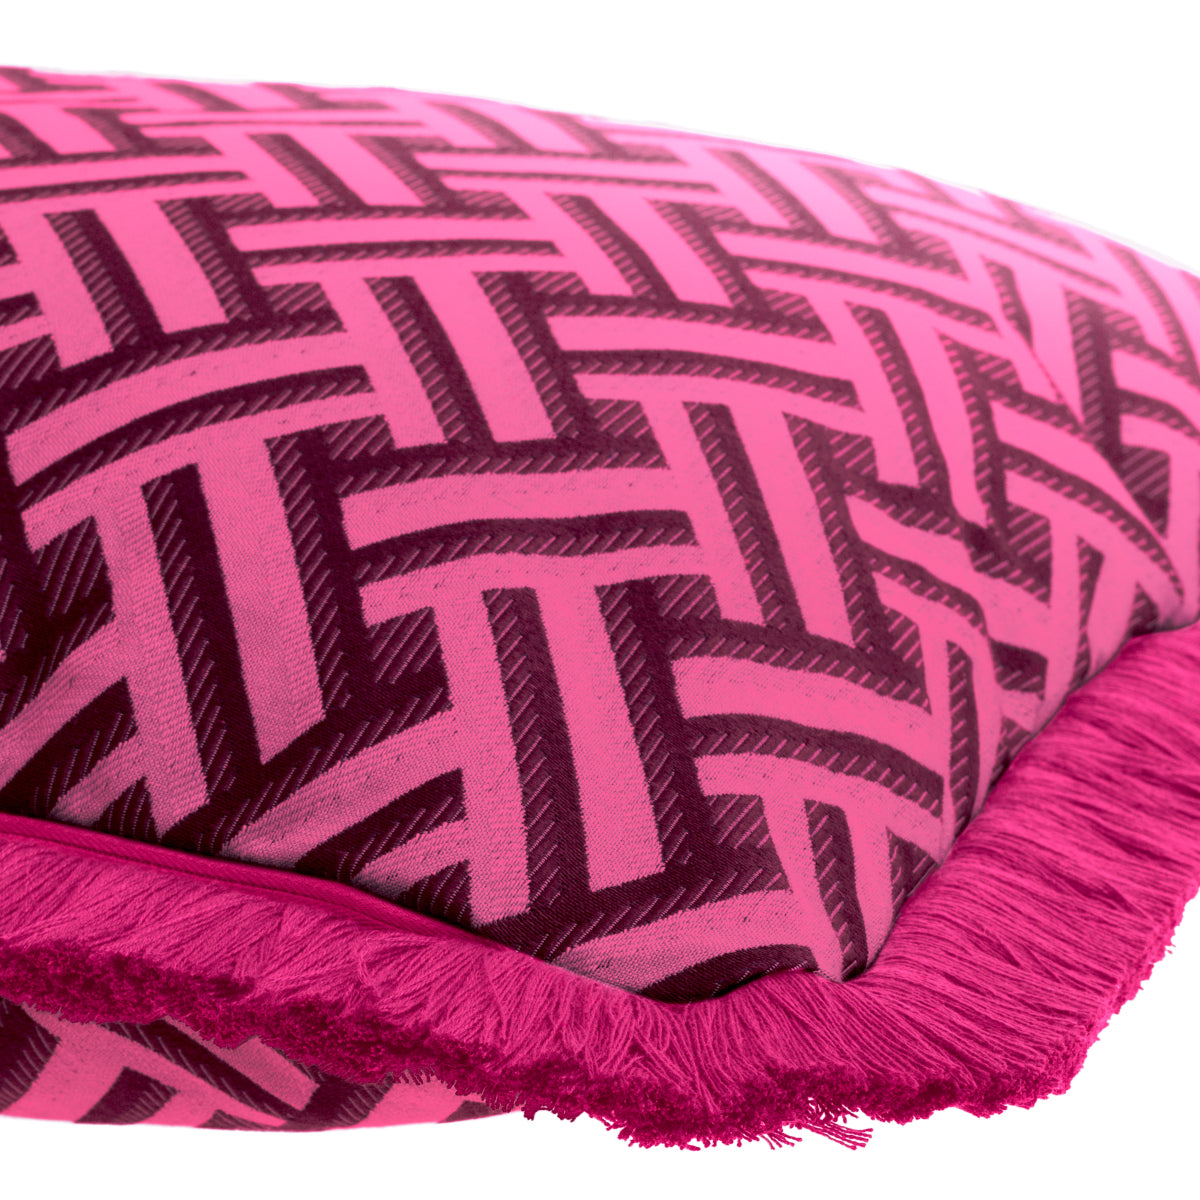 sierkussen eichholtz Doris pink s cushion fuchsia donkerroze